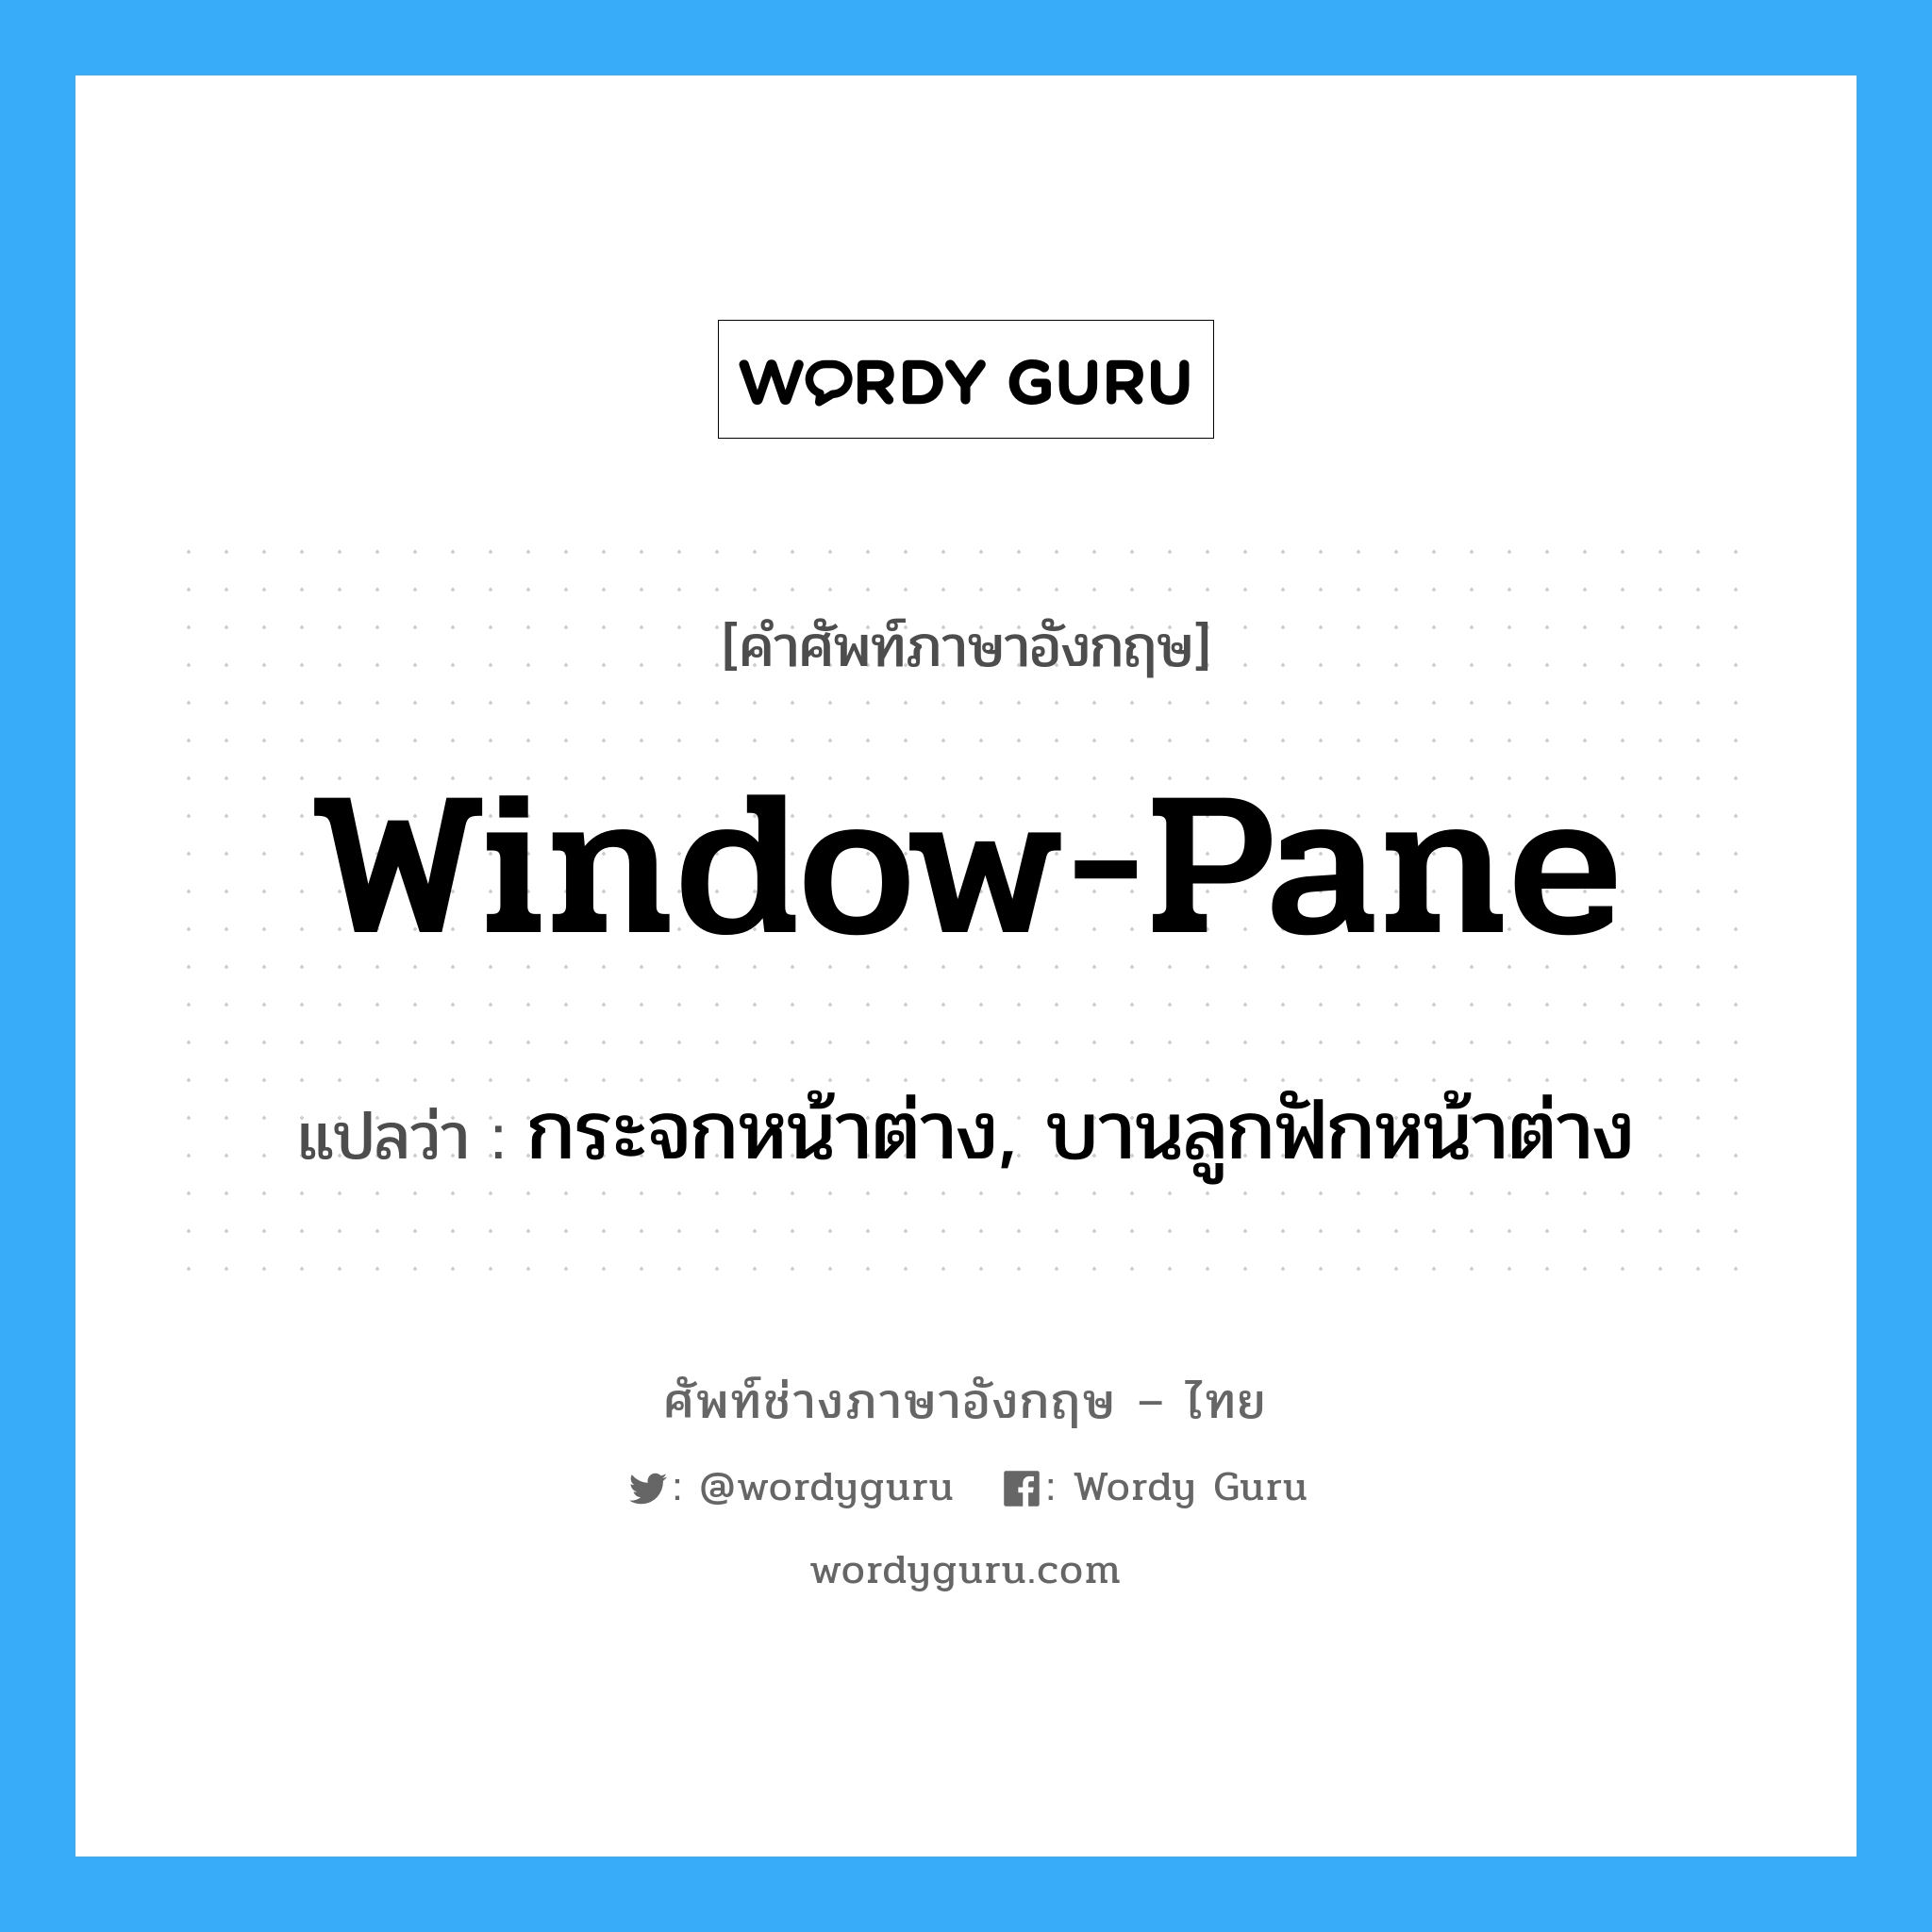 กระจกหน้าต่าง, บานลูกฟักหน้าต่าง ภาษาอังกฤษ?, คำศัพท์ช่างภาษาอังกฤษ - ไทย กระจกหน้าต่าง, บานลูกฟักหน้าต่าง คำศัพท์ภาษาอังกฤษ กระจกหน้าต่าง, บานลูกฟักหน้าต่าง แปลว่า window-pane